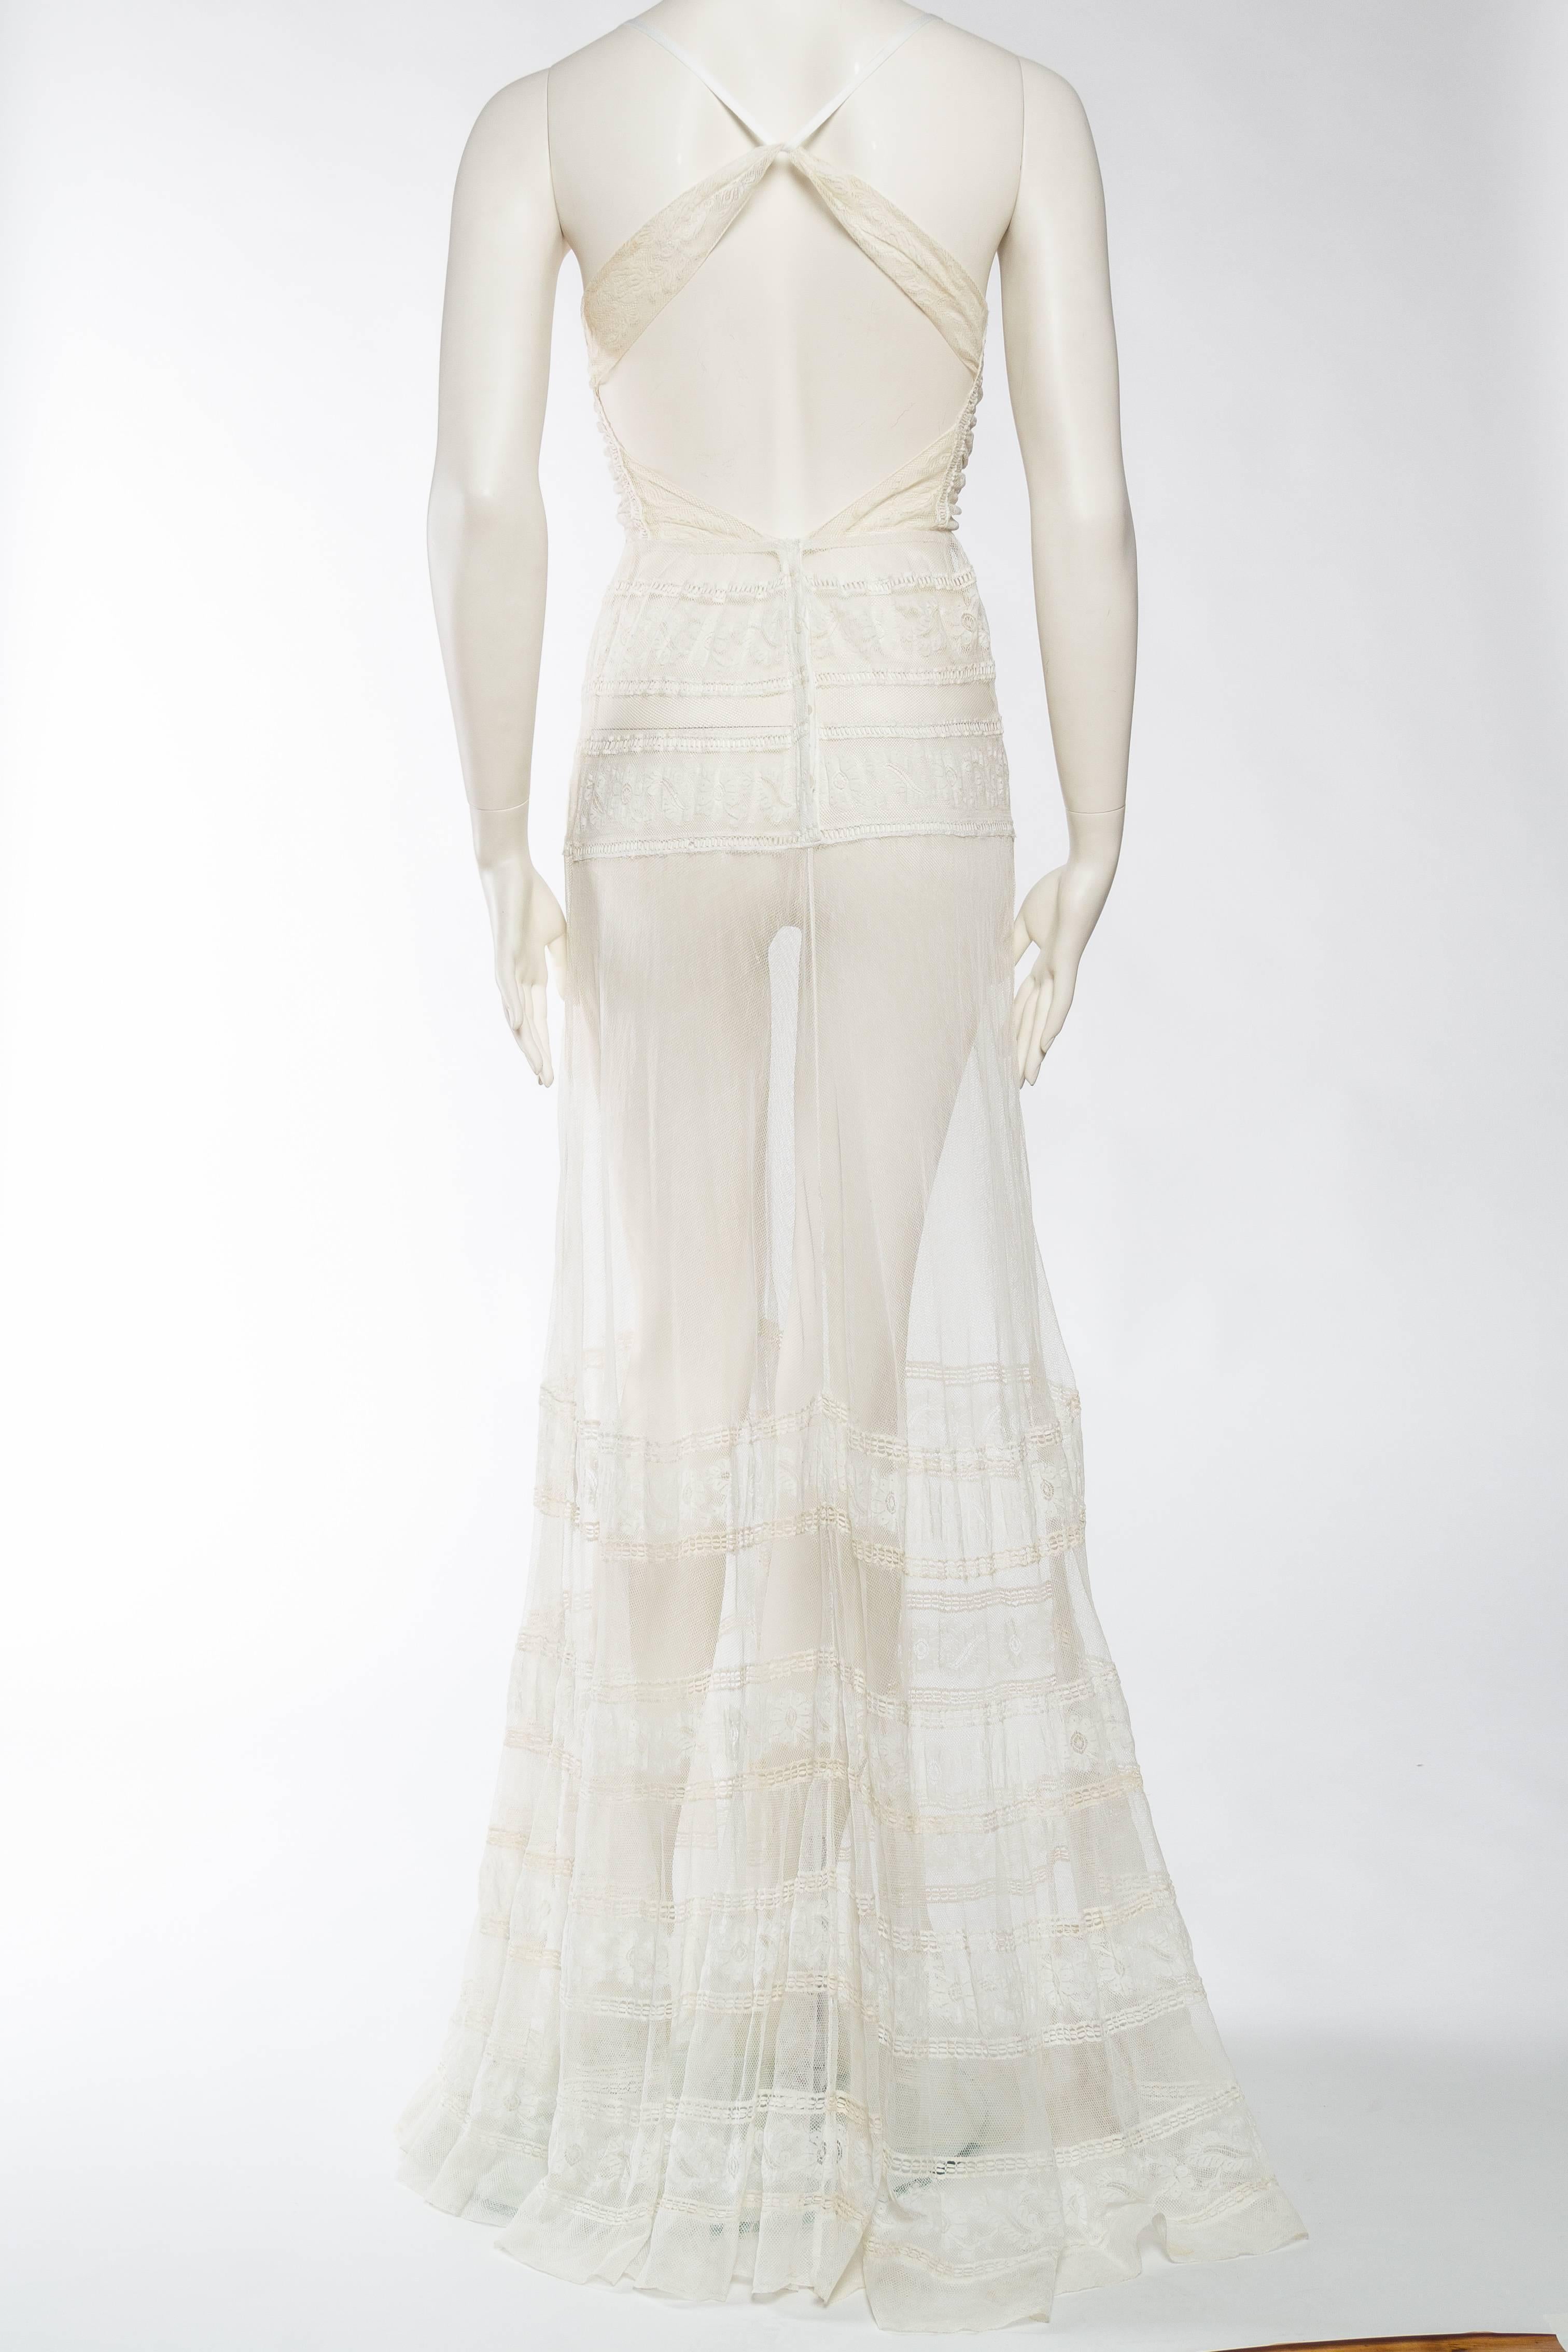 Women's Rebuilt Victorian Net & Lace Tea Gown